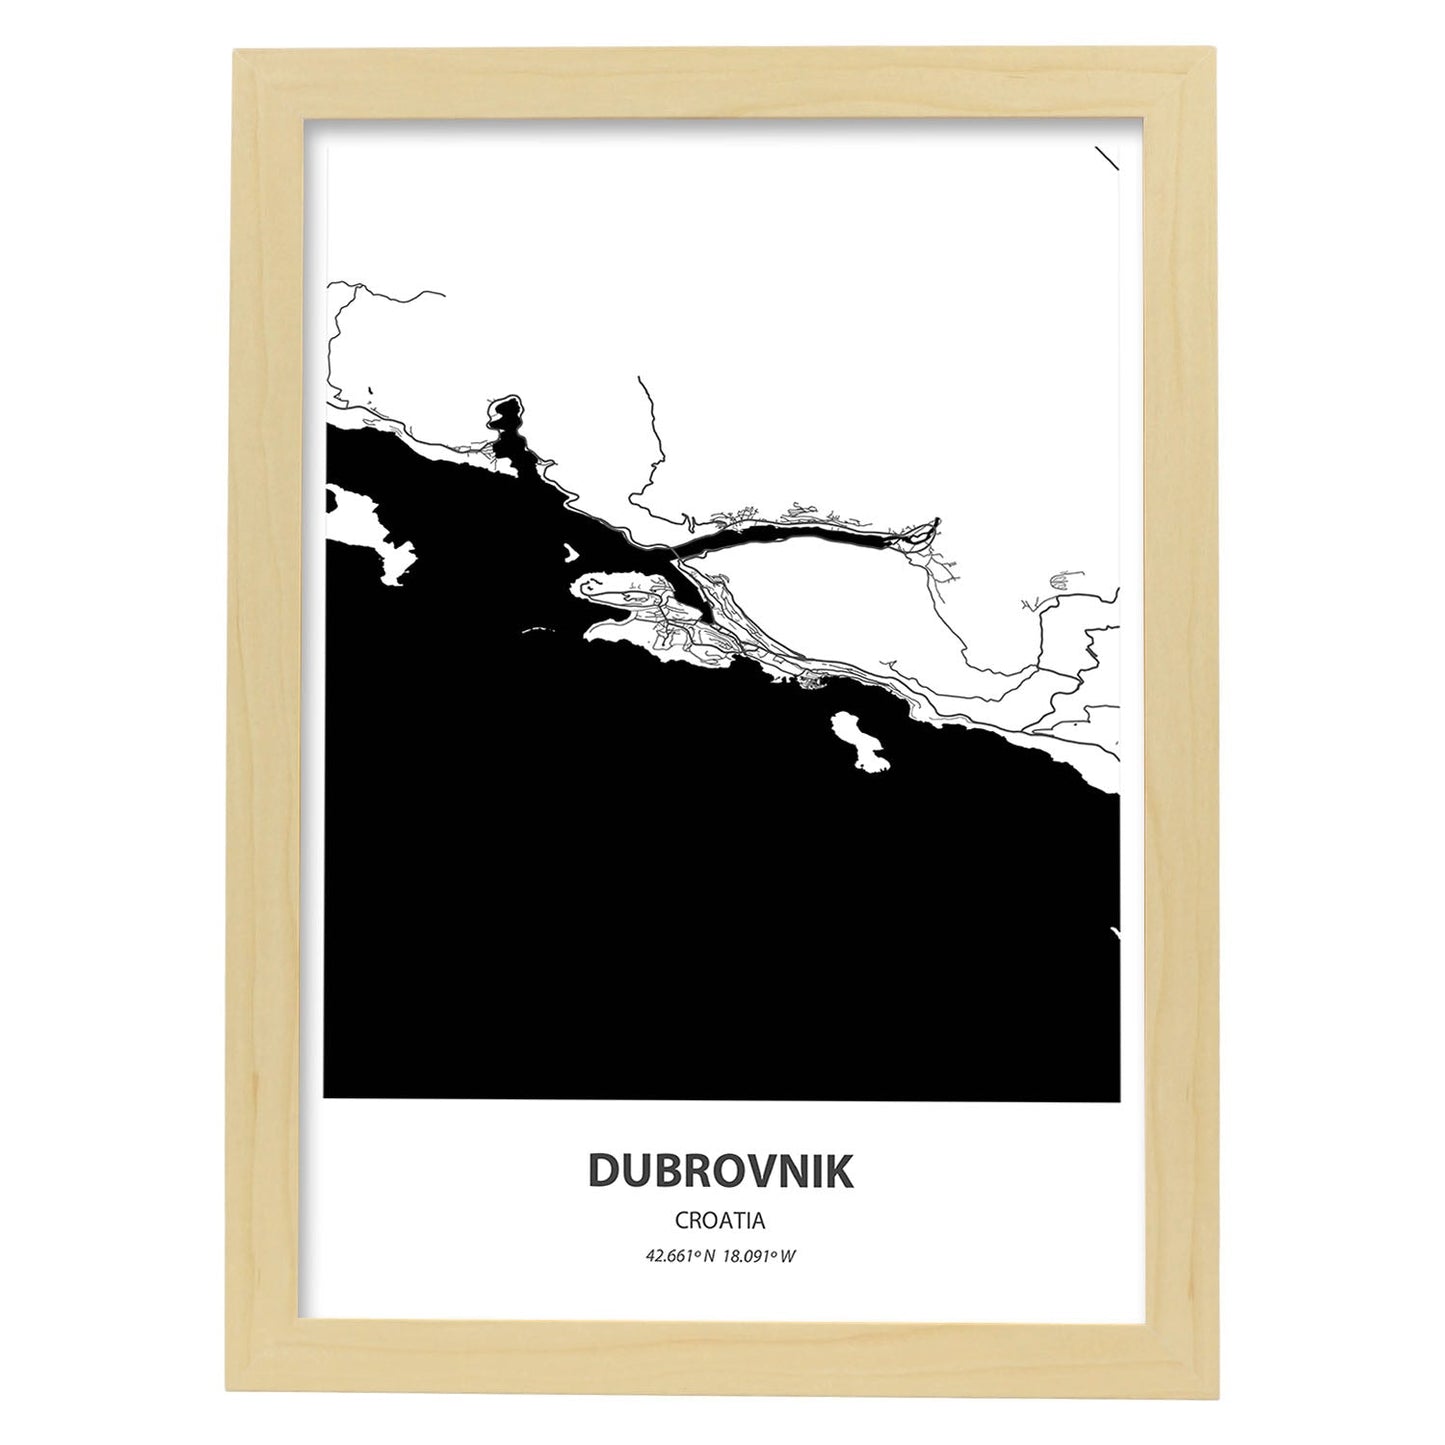 Poster con mapa de Dubrokniv - Croacia. Láminas de ciudades de Europa con mares y ríos en color negro.-Artwork-Nacnic-A3-Marco Madera clara-Nacnic Estudio SL